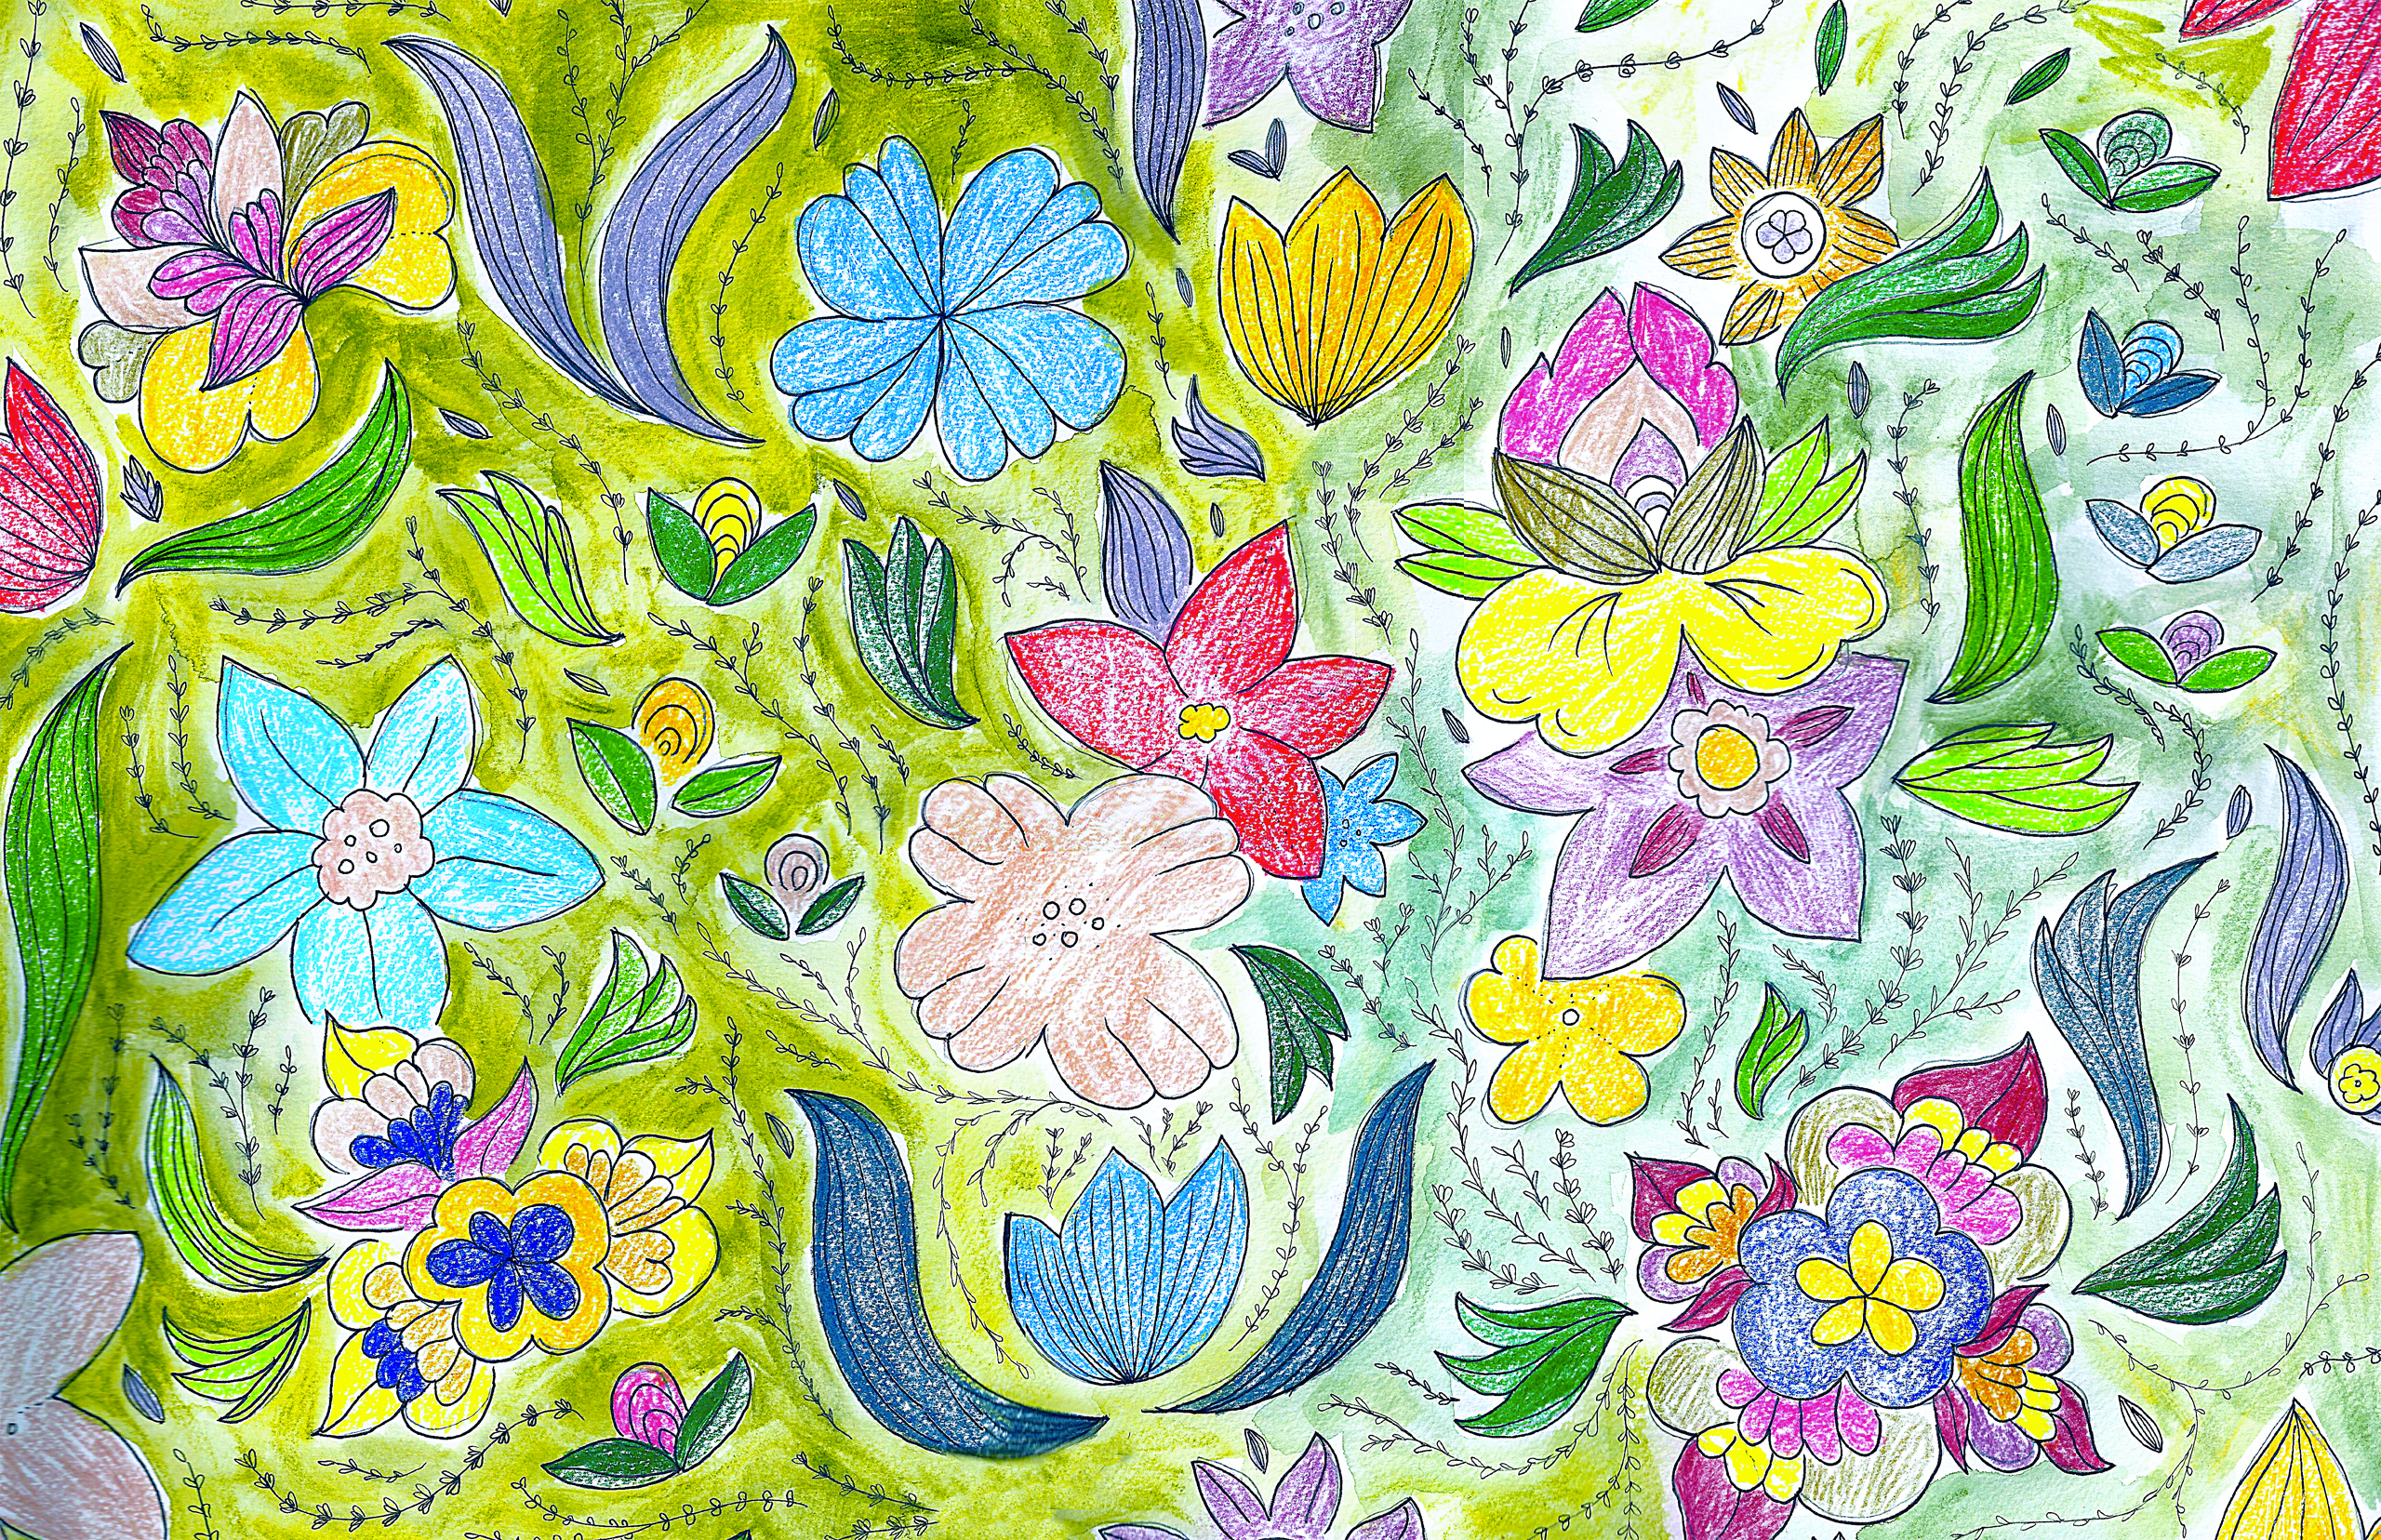 [50+] Happy Spring Wallpapers | WallpaperSafari